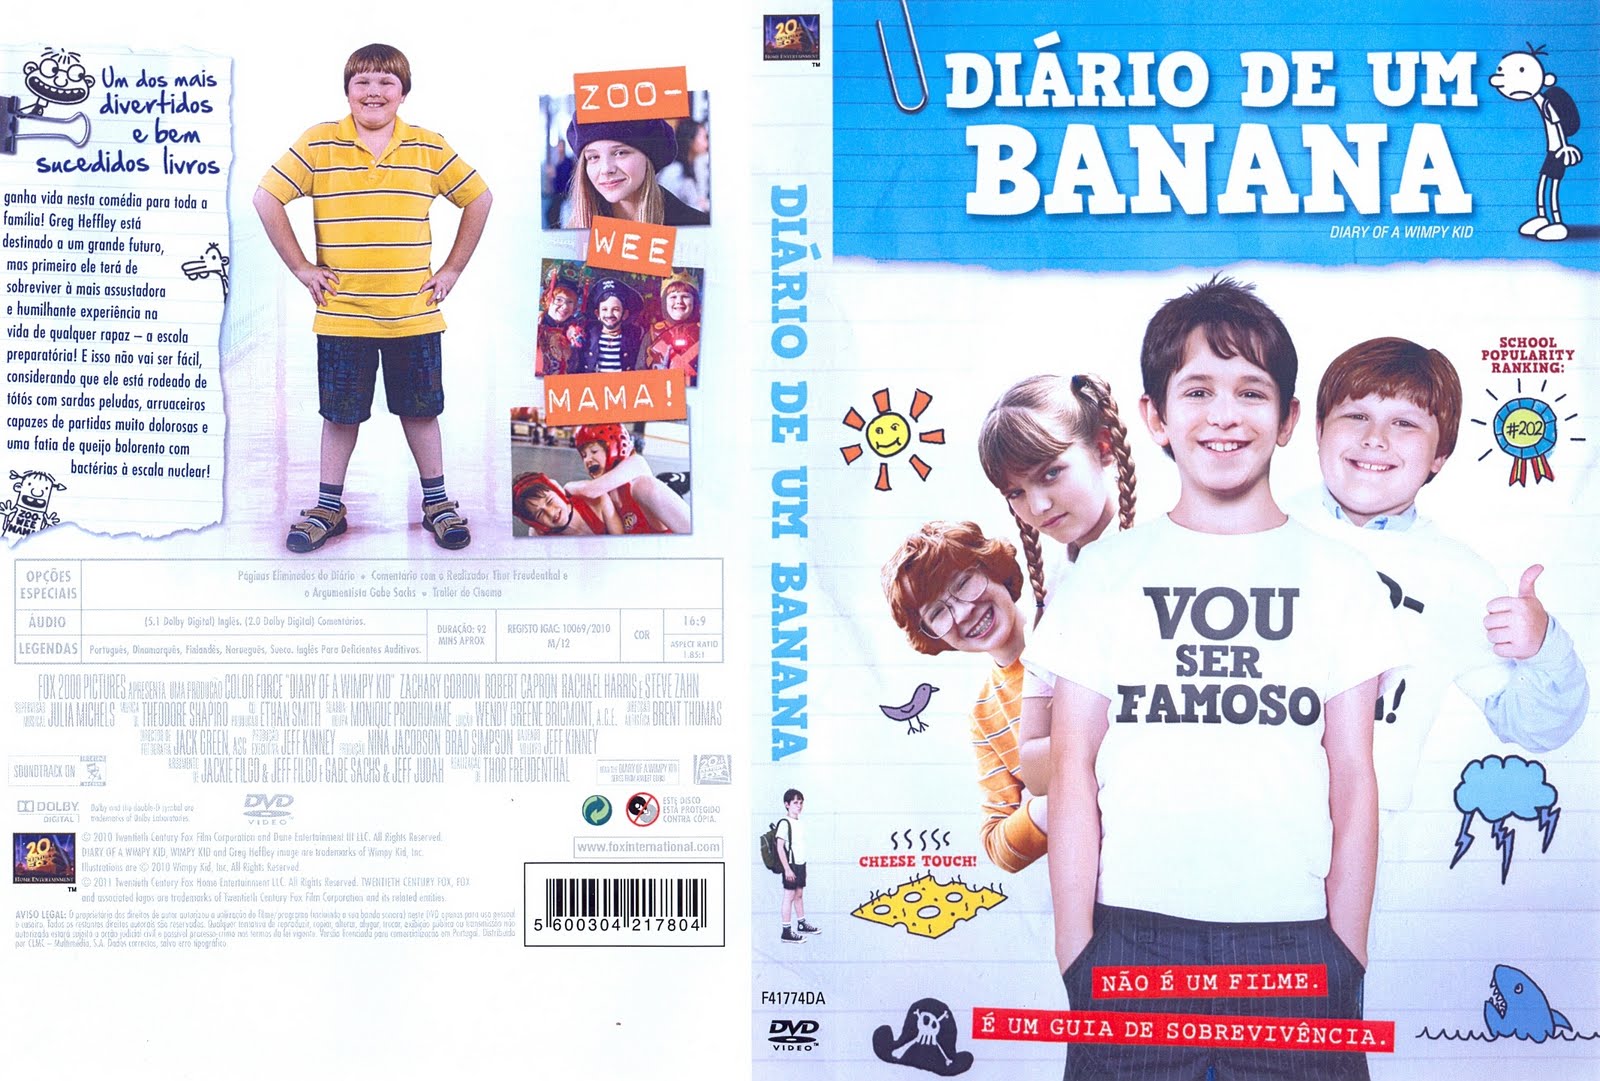 Diário de um Banana (Diary of a Wimpy Kid) - Chloë Moretz Brasil